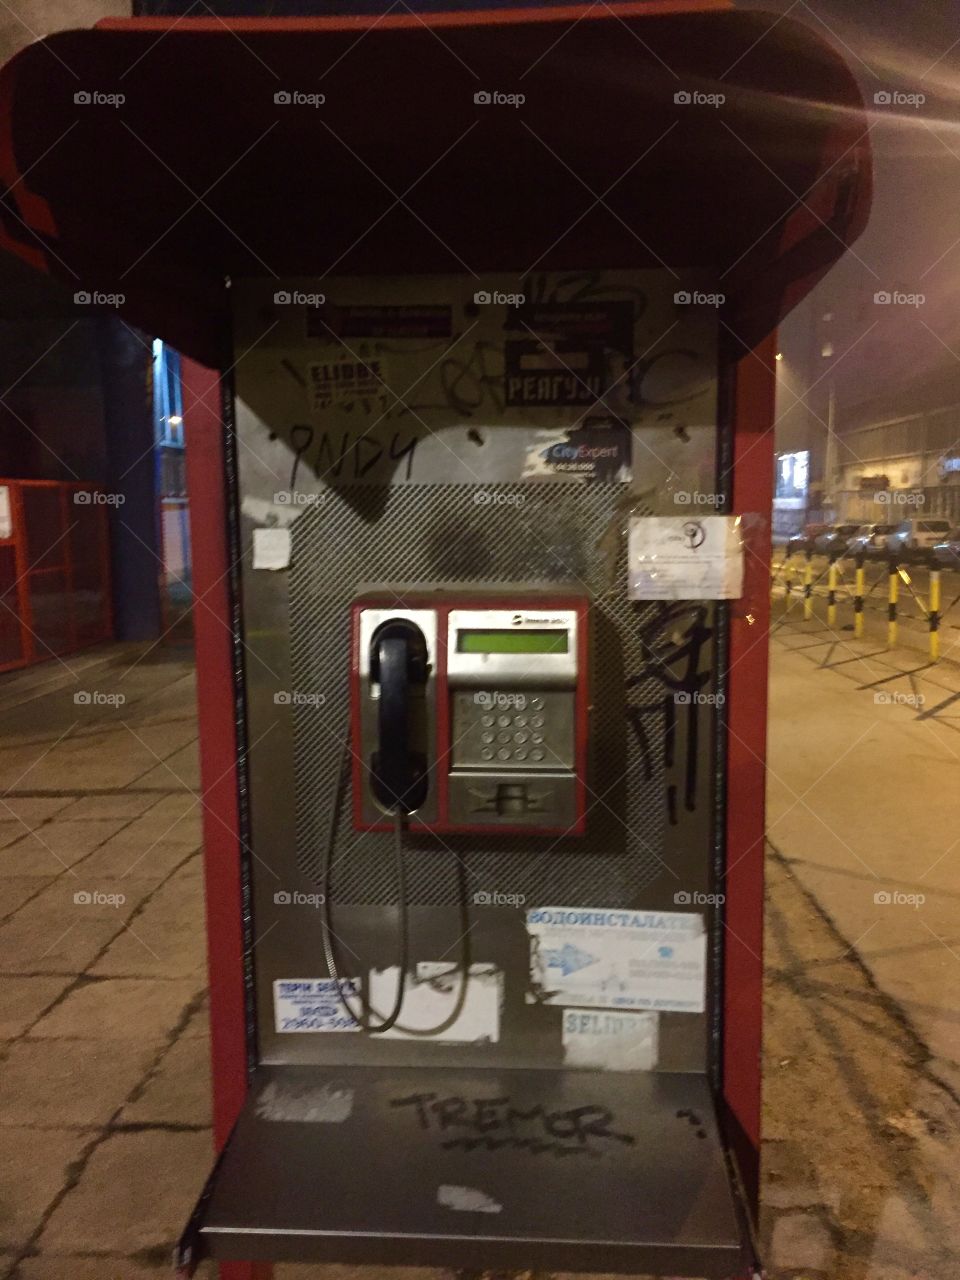 Public payphone